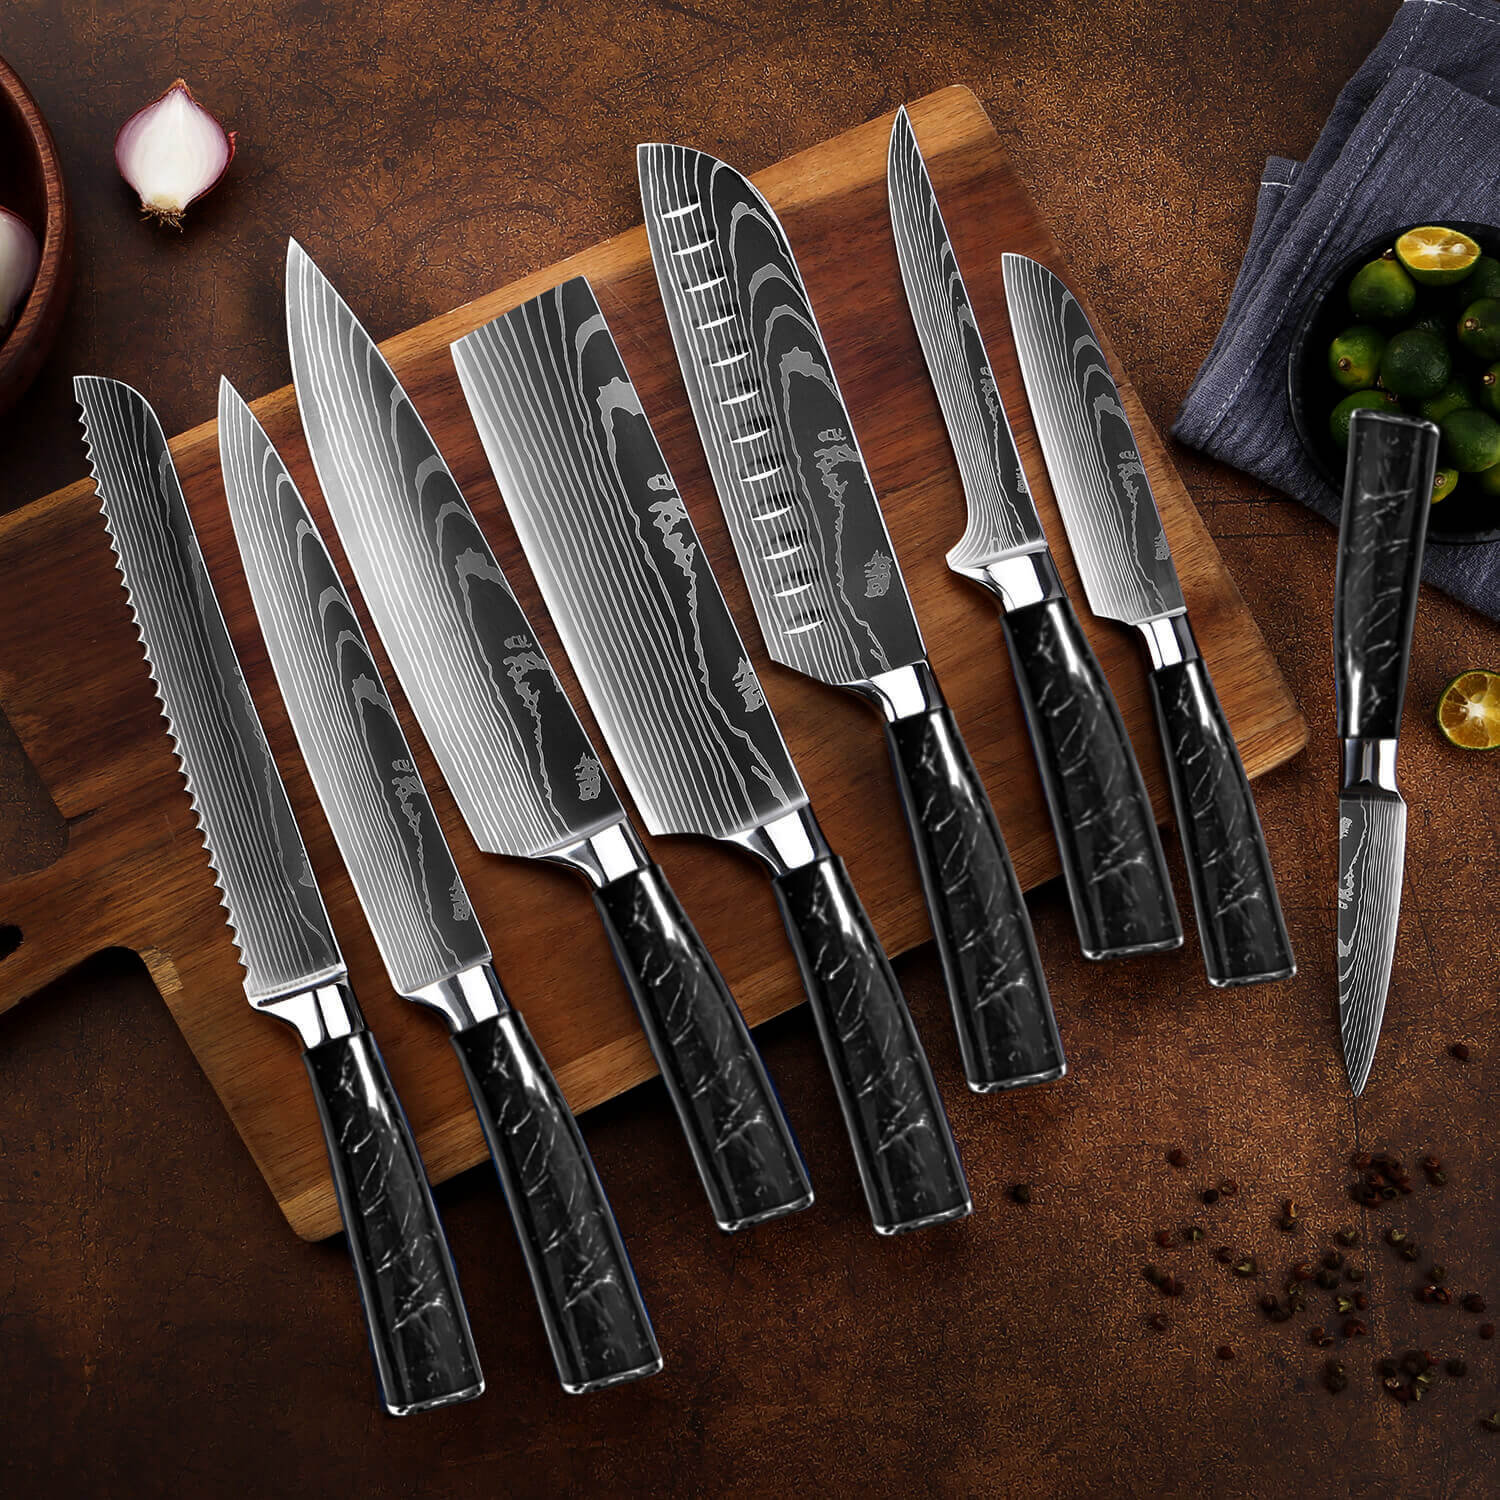 https://assets.wfcdn.com/im/94857690/compr-r85/2518/251855792/senken-knives-8-piece-high-carbon-stainless-steel-assorted-knife-set.jpg